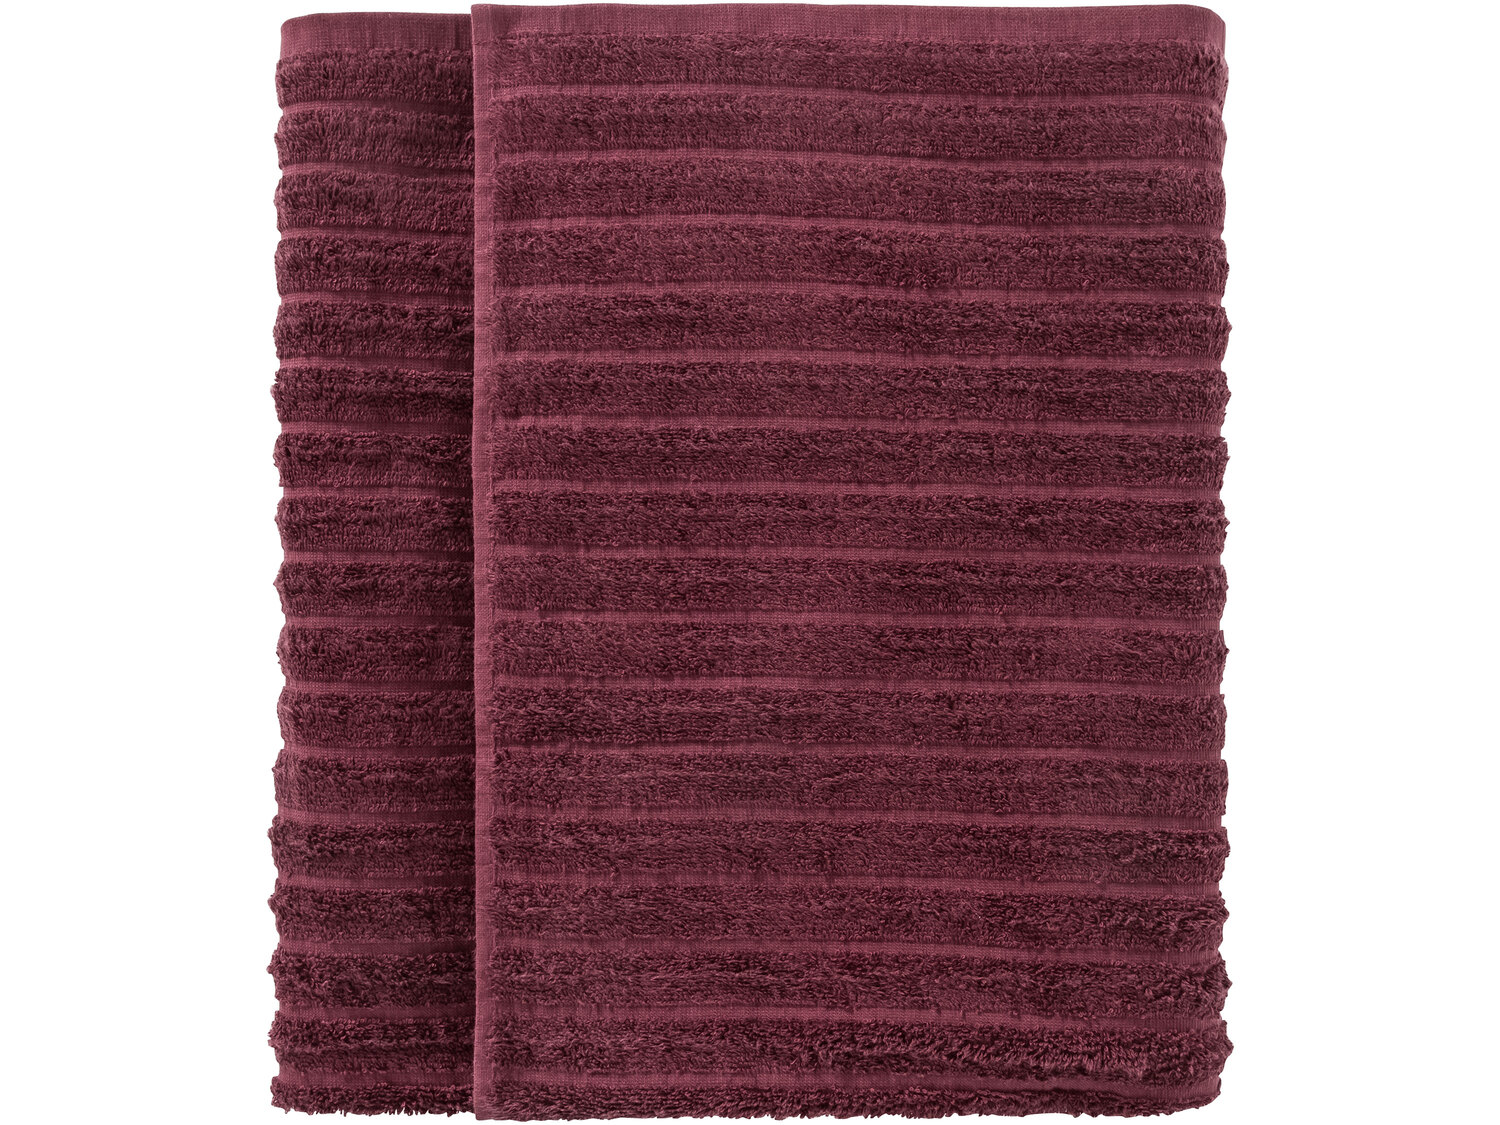 Ręcznik 100 x 150 cm Miomare, cena 29,99 PLN 
- 450 g/m2
- 100% bawełny
- miękkie ...